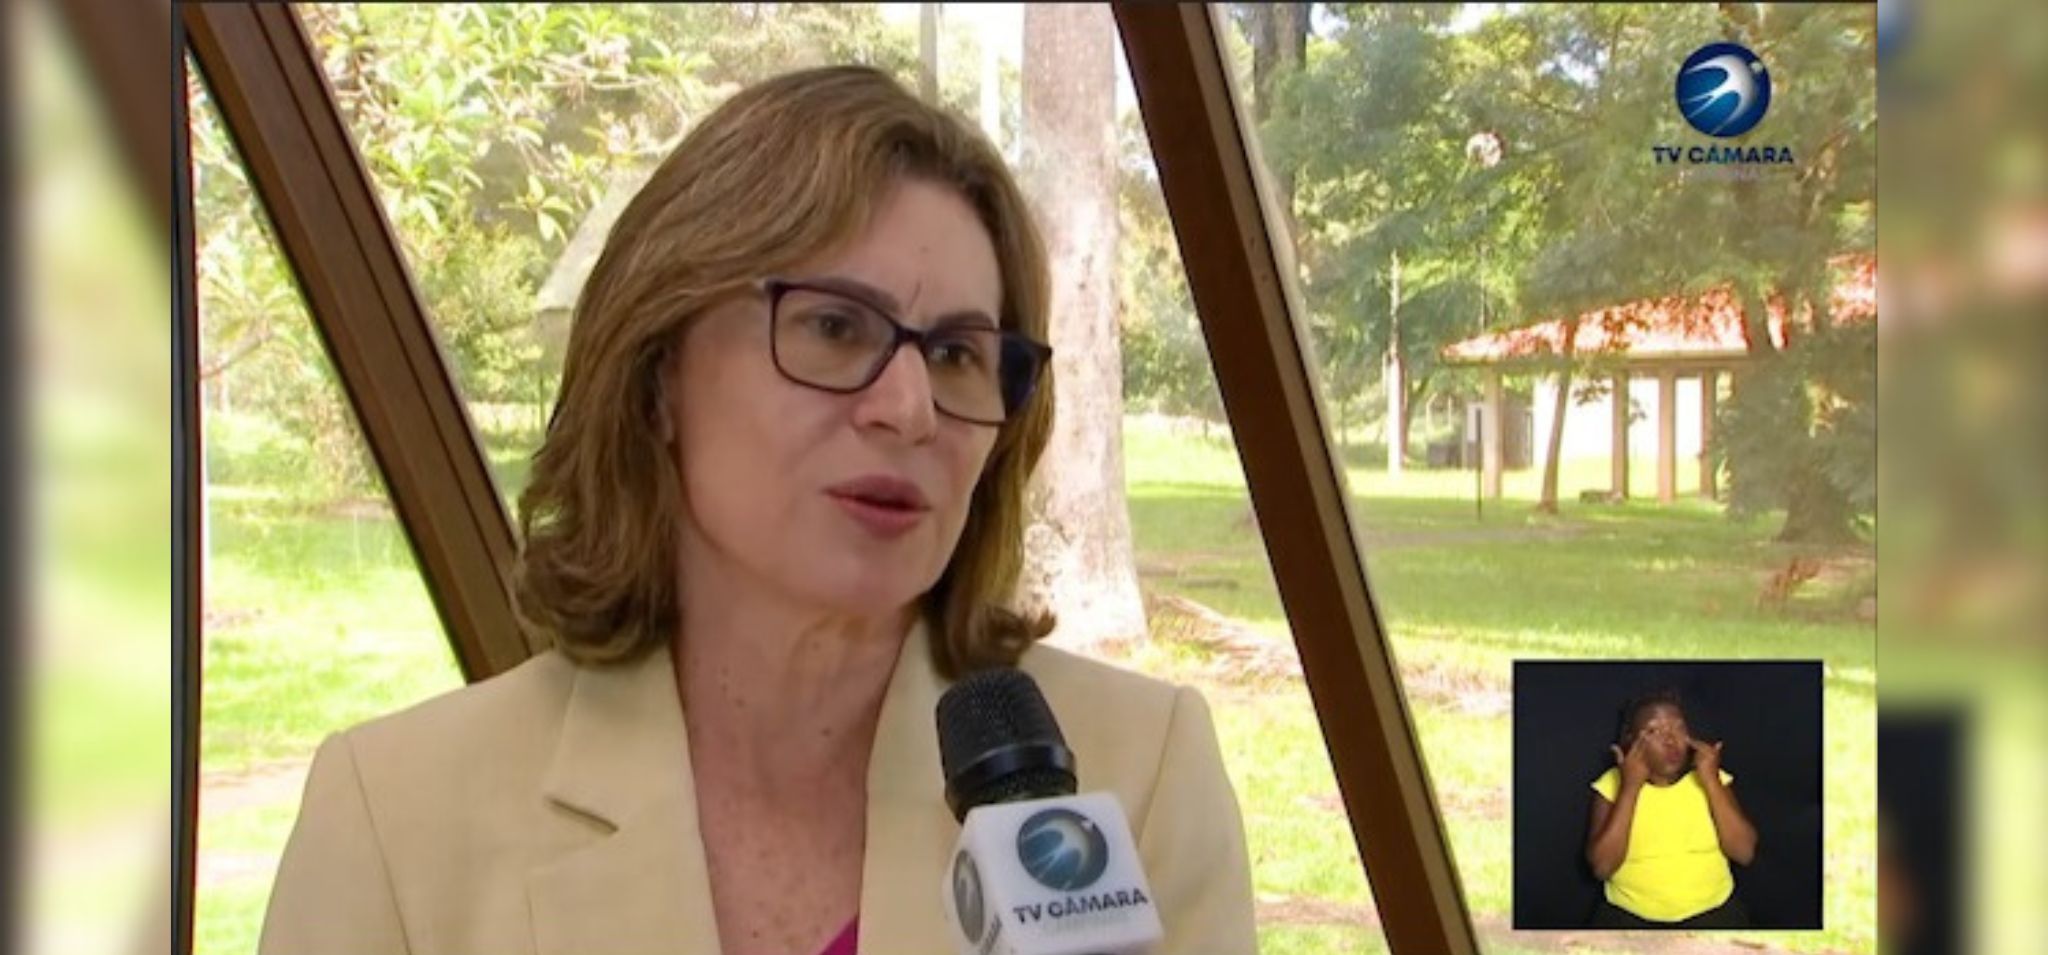 Captura de tela. Professora Ana Frattini dá entrevista para TV Câmara de Campinas. Ela é uma mulher loira, usa óculo de armação quadrada. Fim da descrição.